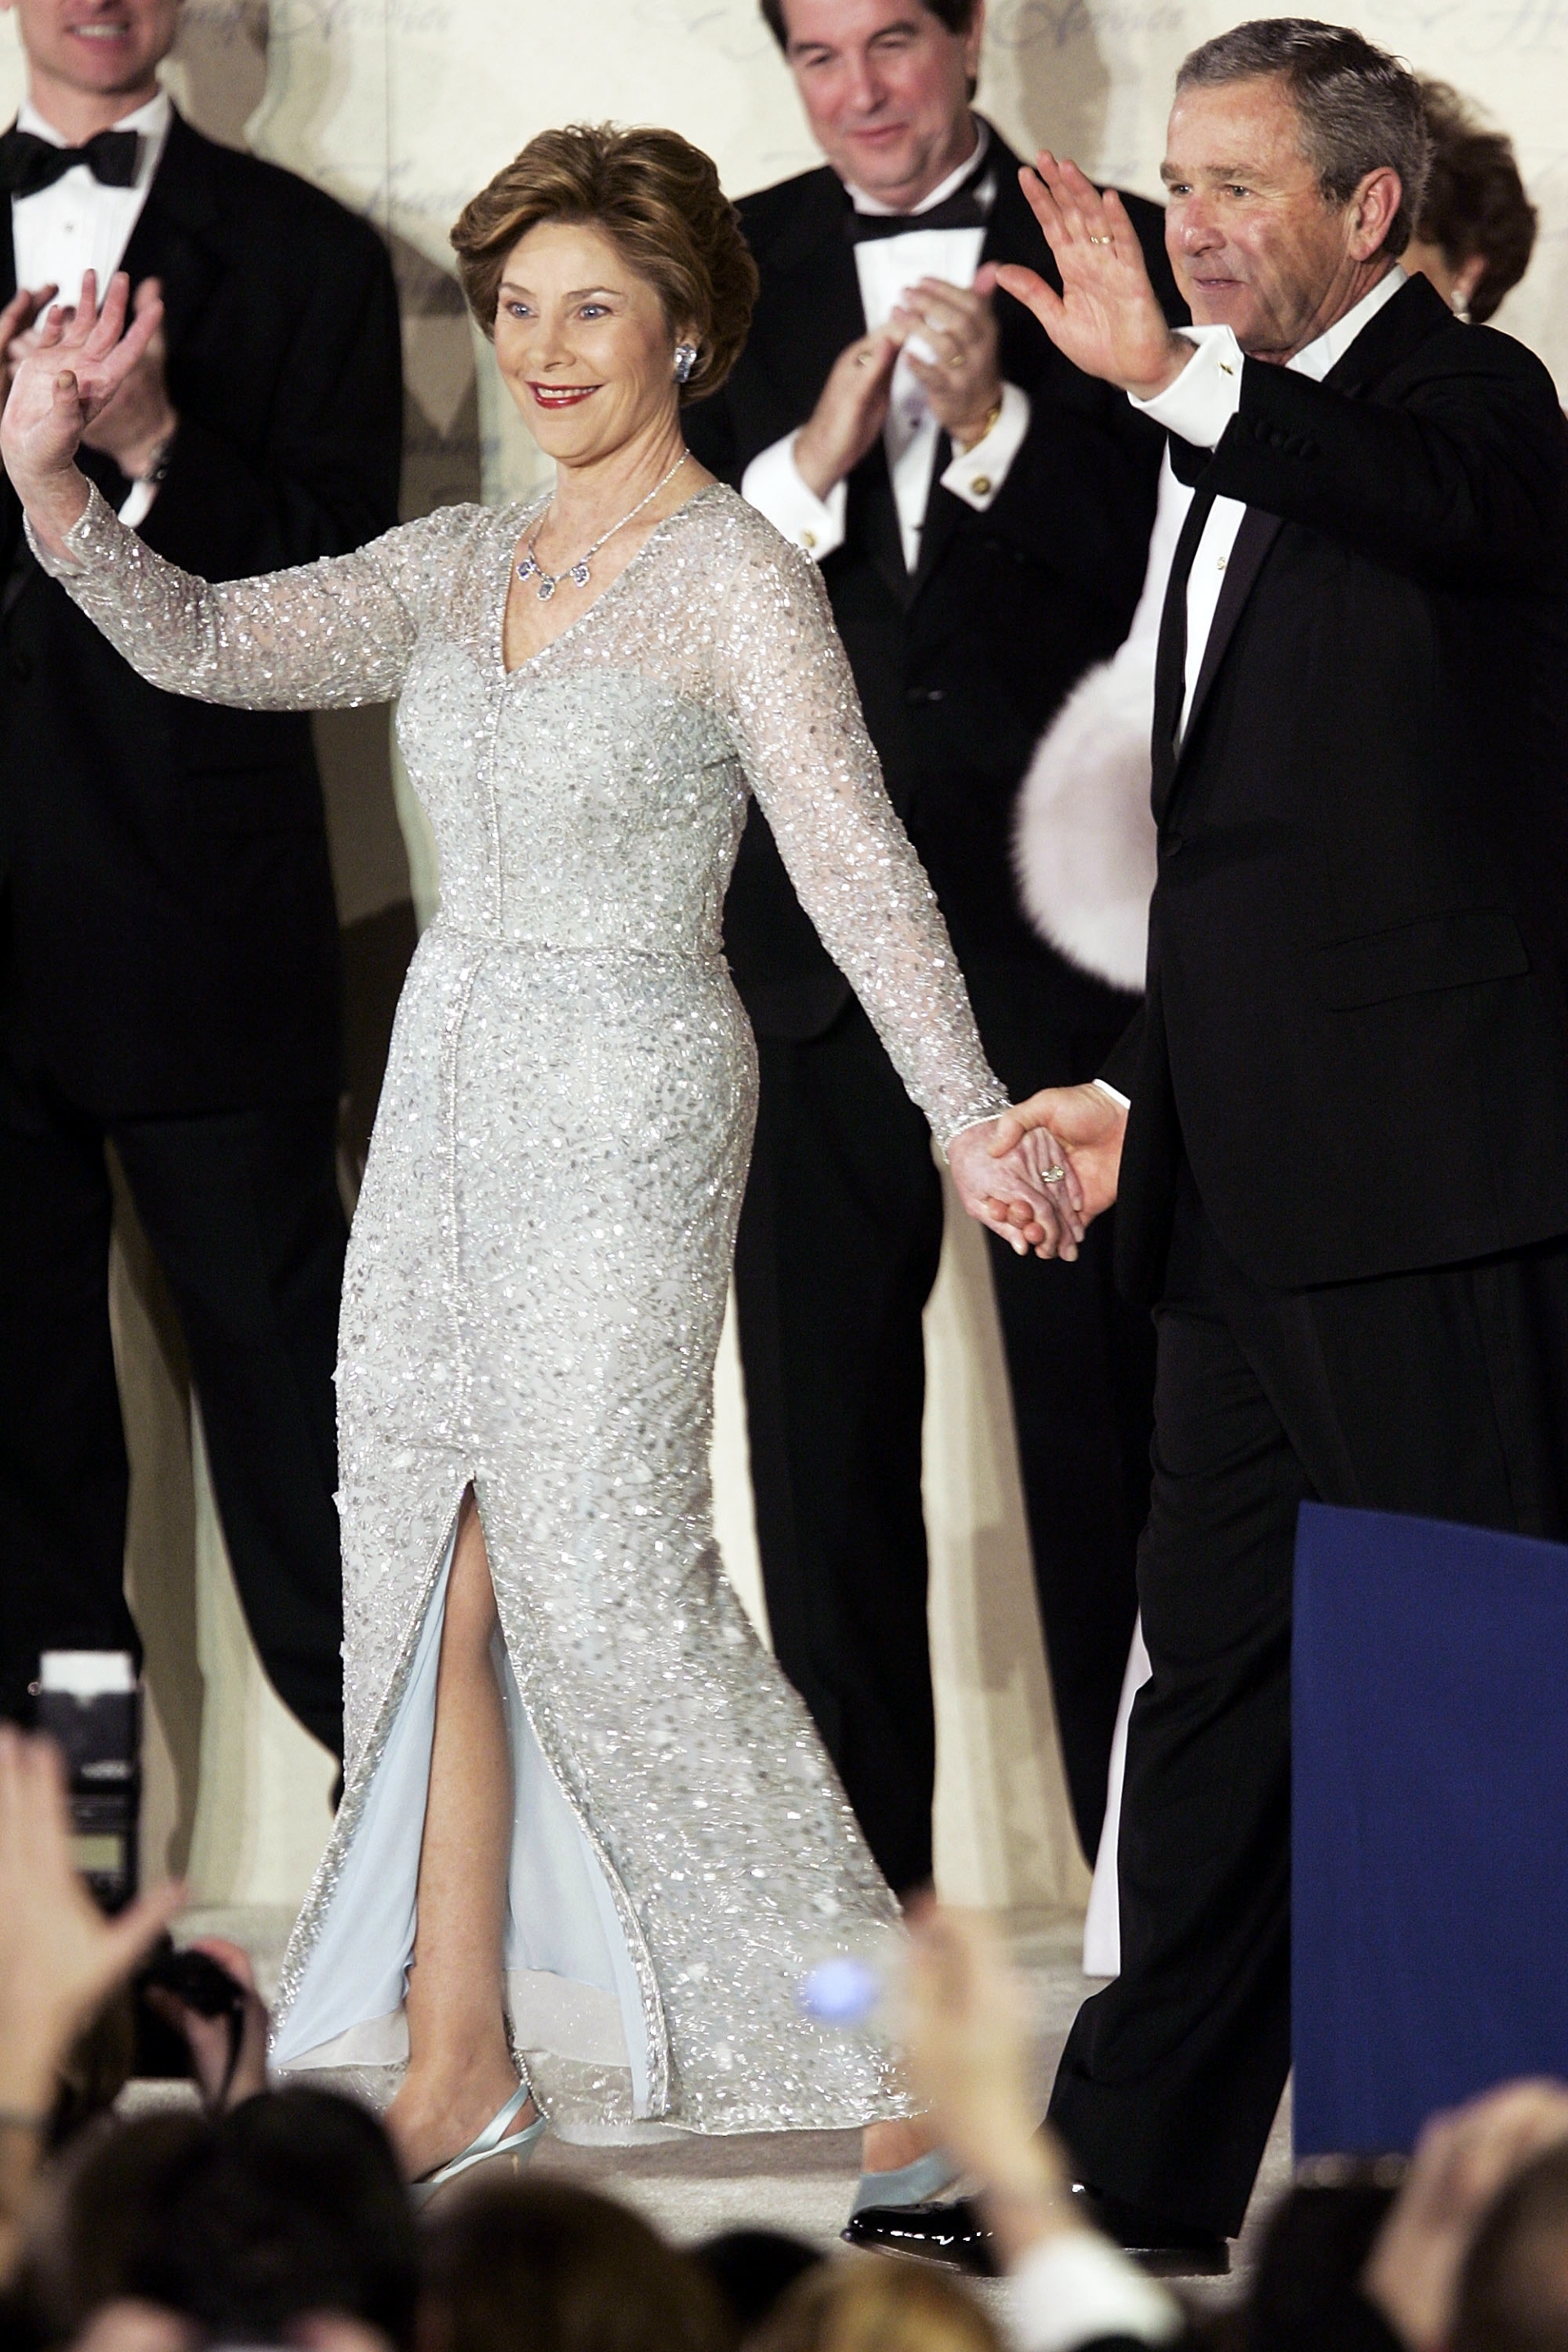 Джордж Буш и Лора Буш в платье Oscar de la Renta, инаугурационный бал, 2005 год